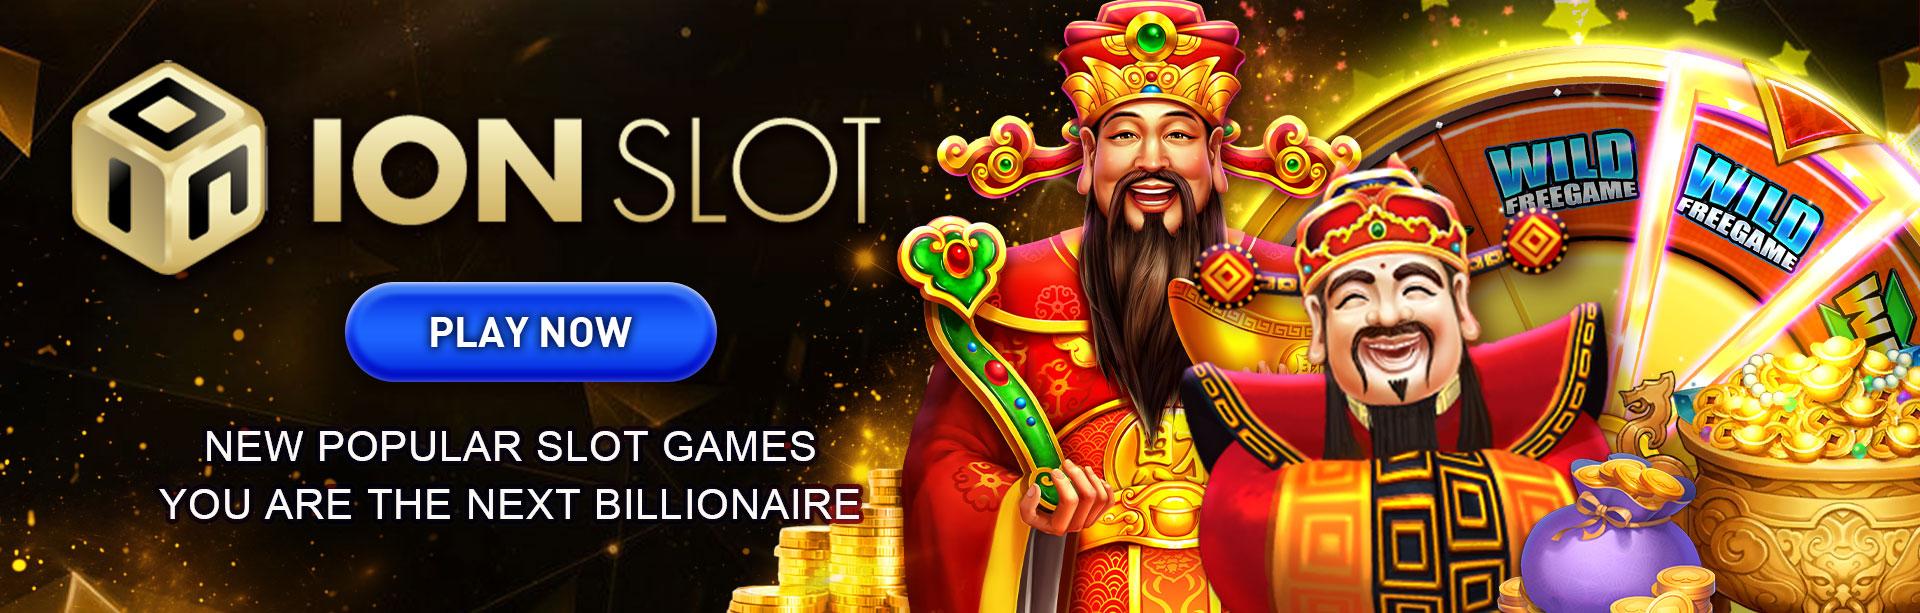 Ionslot New Popular Slot Games